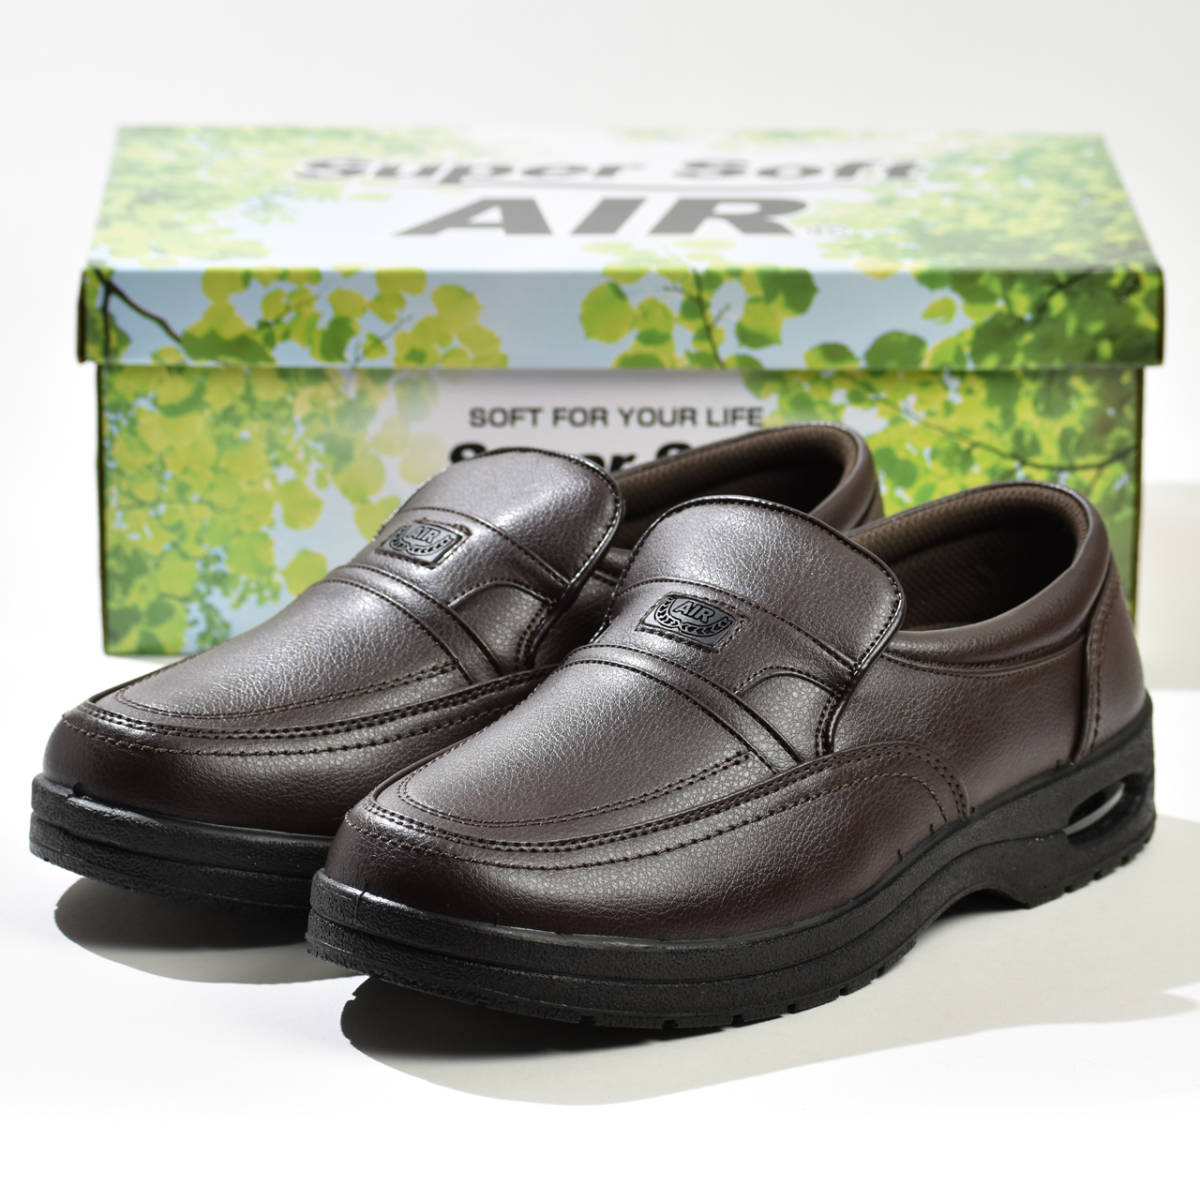  walking shoes men's wide width 4E tea business shoes 26.0cm